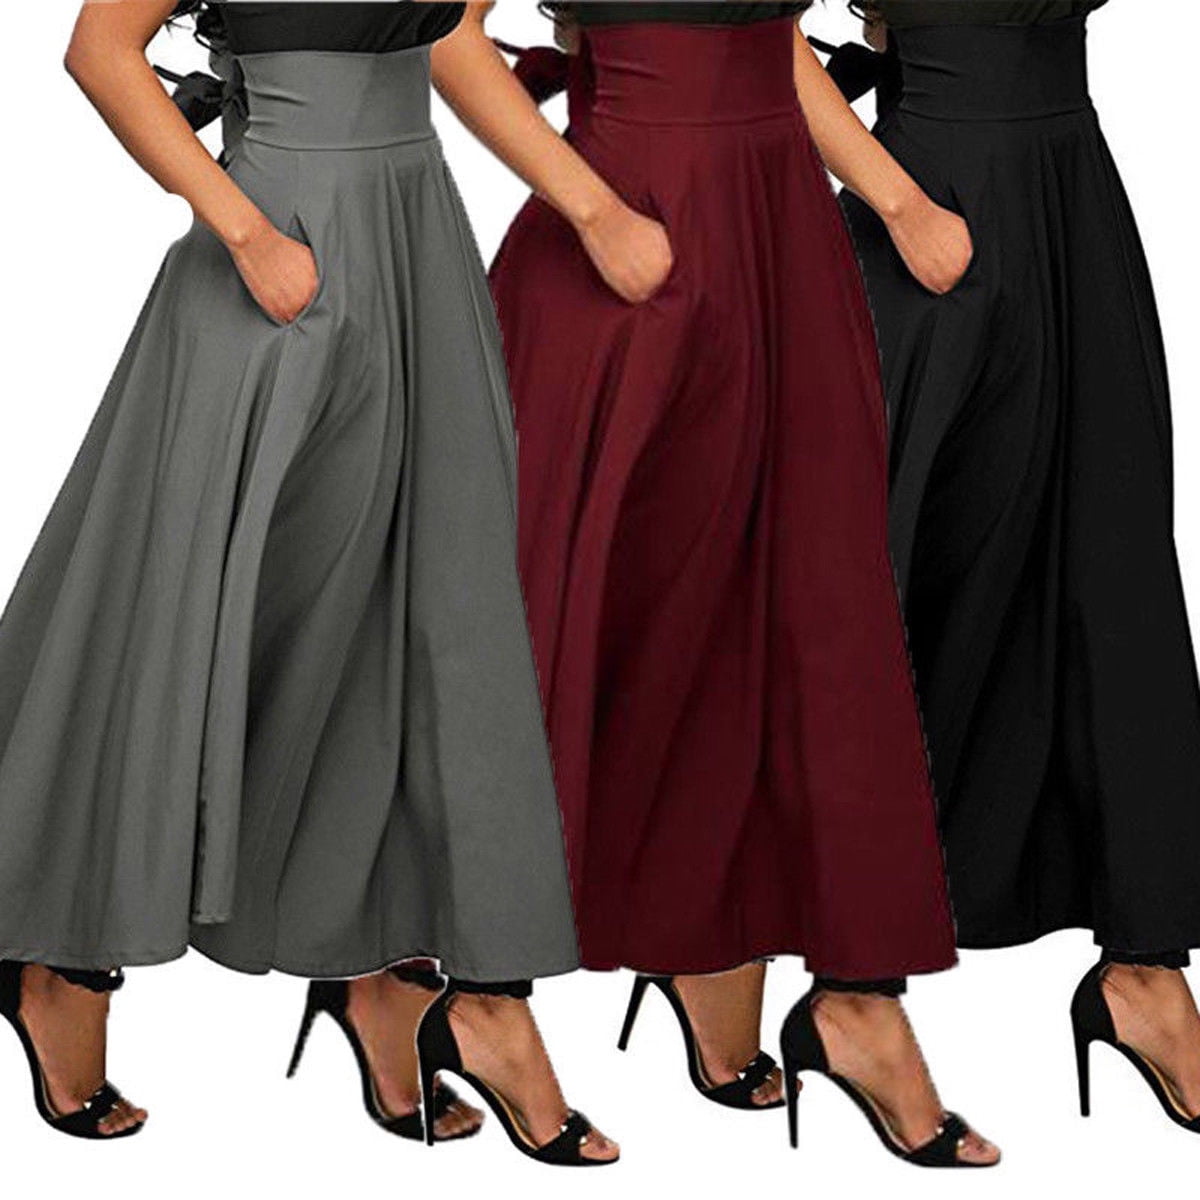 Bagilaanoe High Waist Pleated Long Skirts Women Flared Full Maxi Skirt